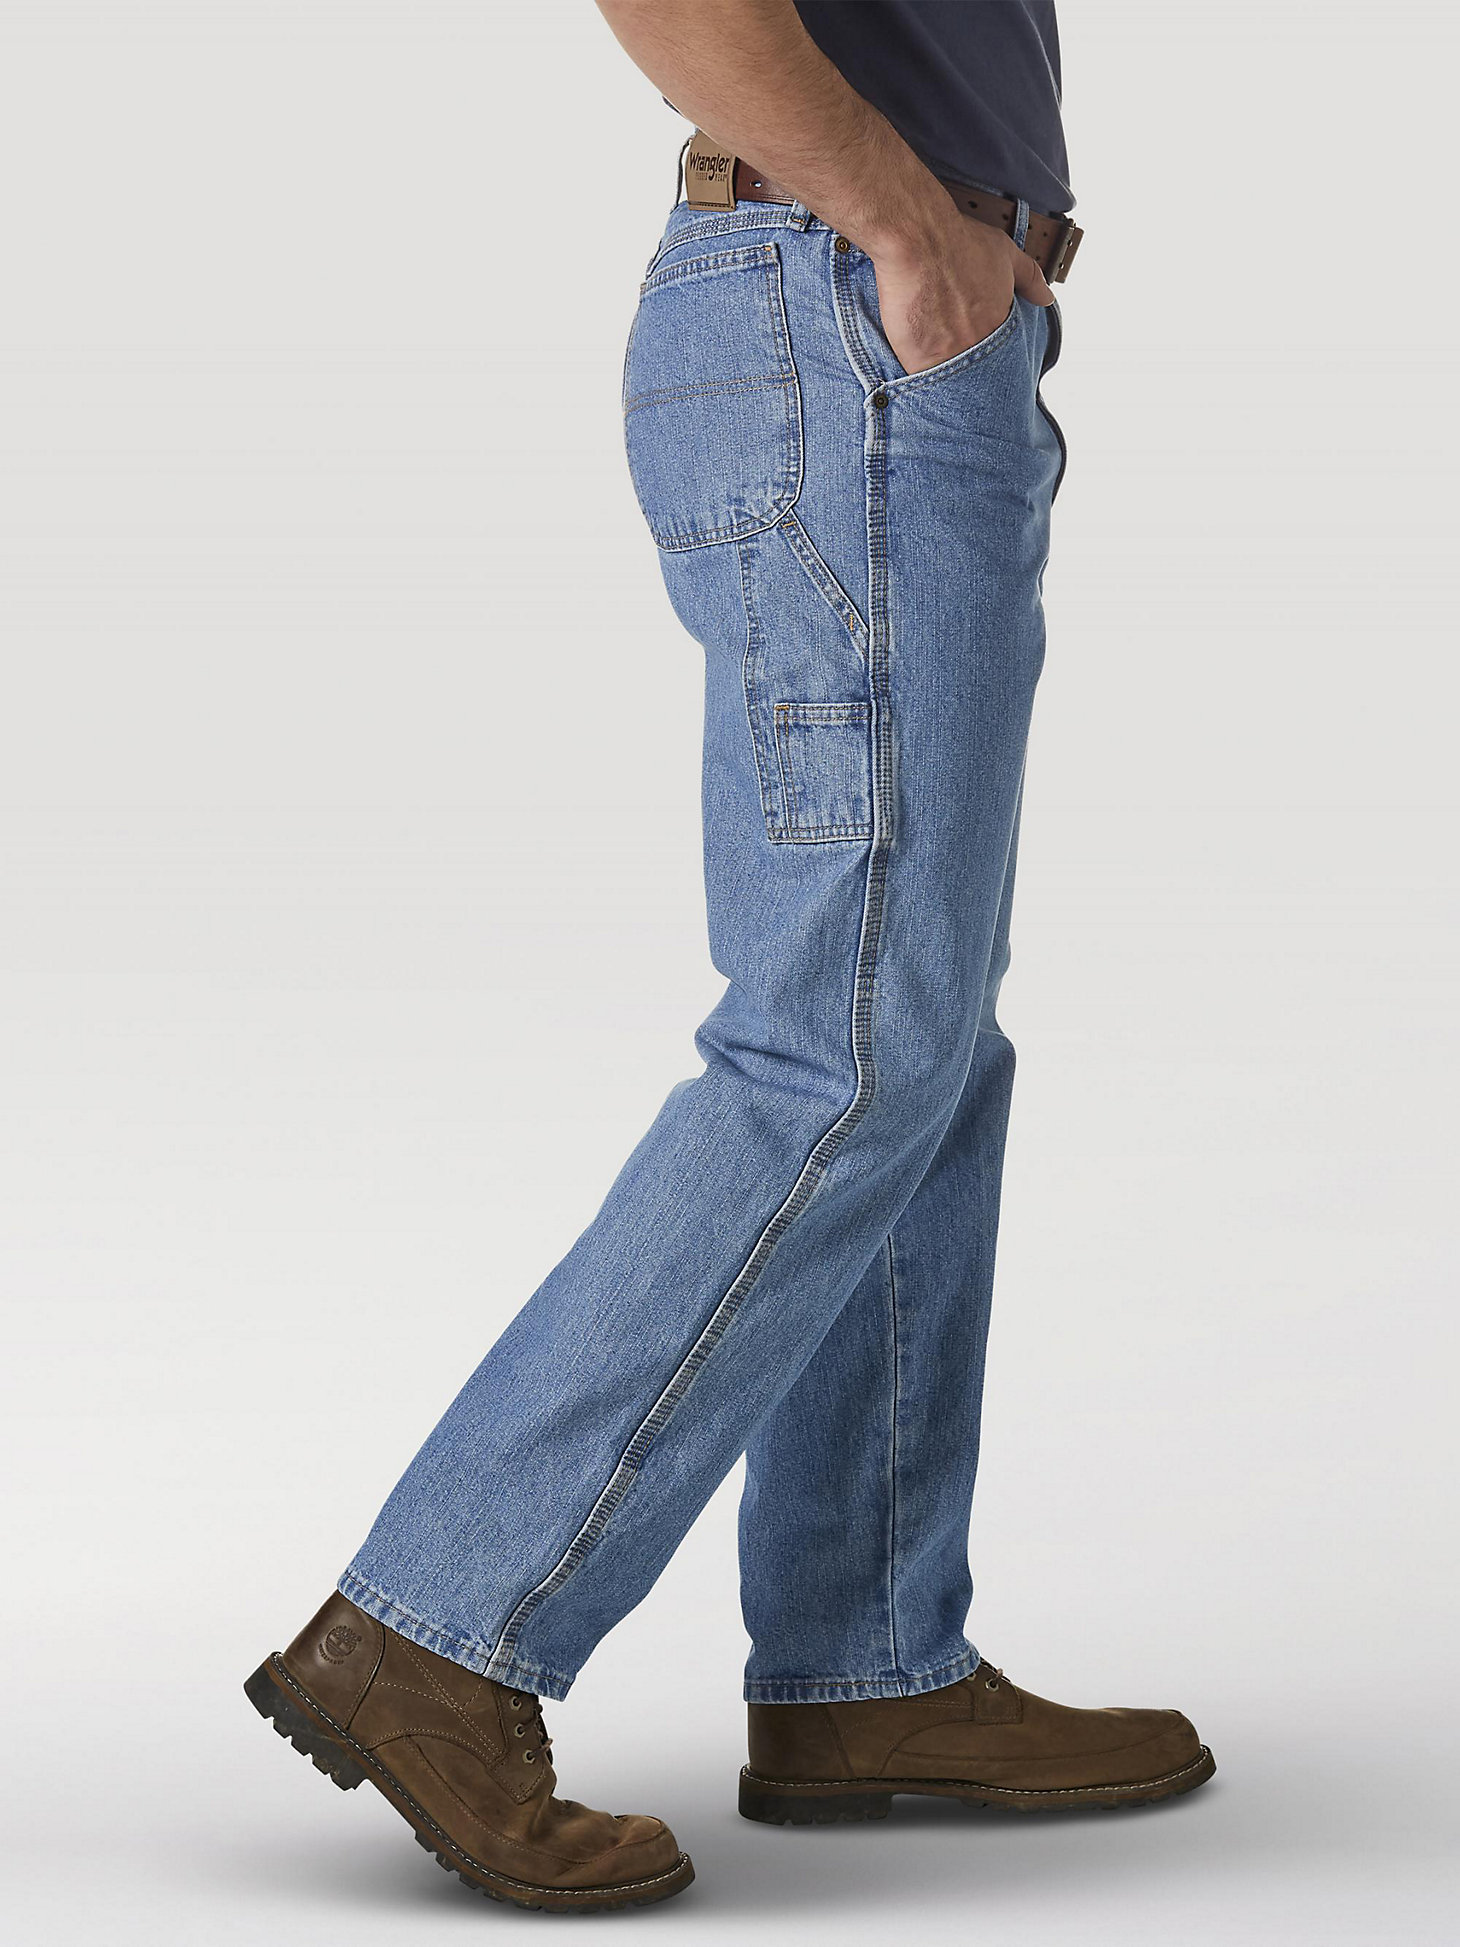 Wrangler Rugged Wear® Carpenter Jean in Vintage Indigo alternative view 1